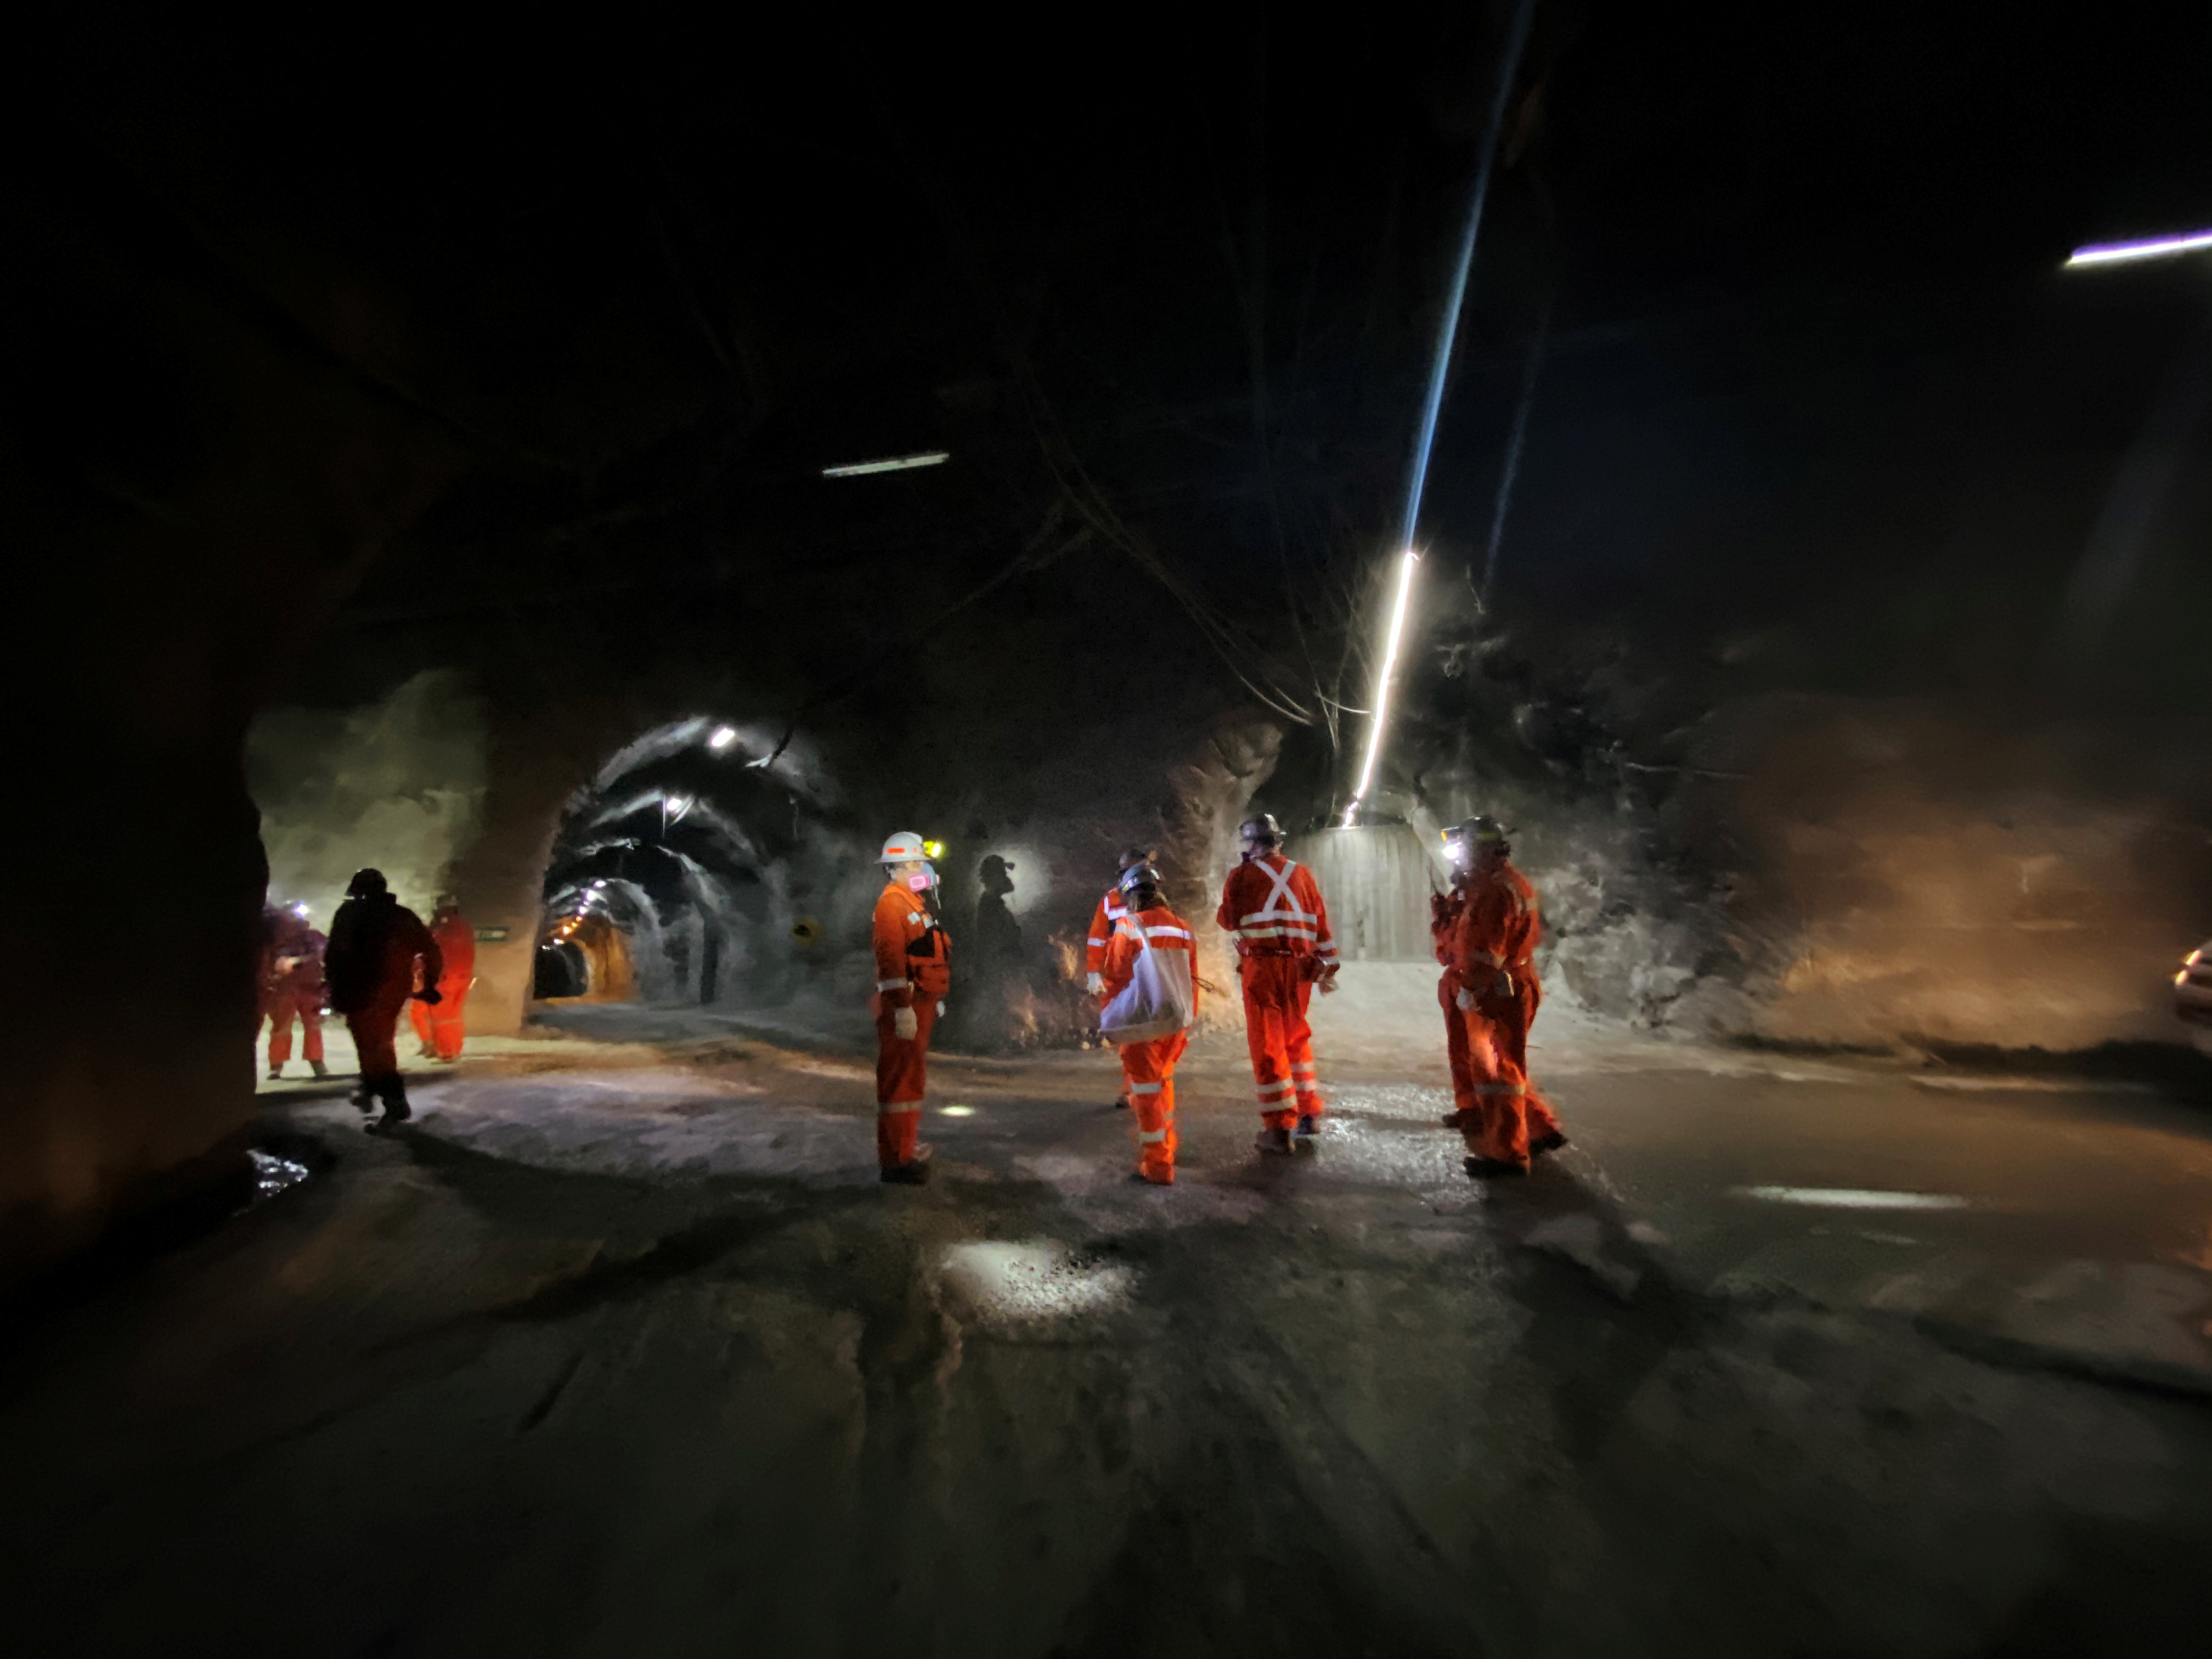 The Codelco El Teniente copper mine, the world's largest underground copper mine is shown near Rancagua